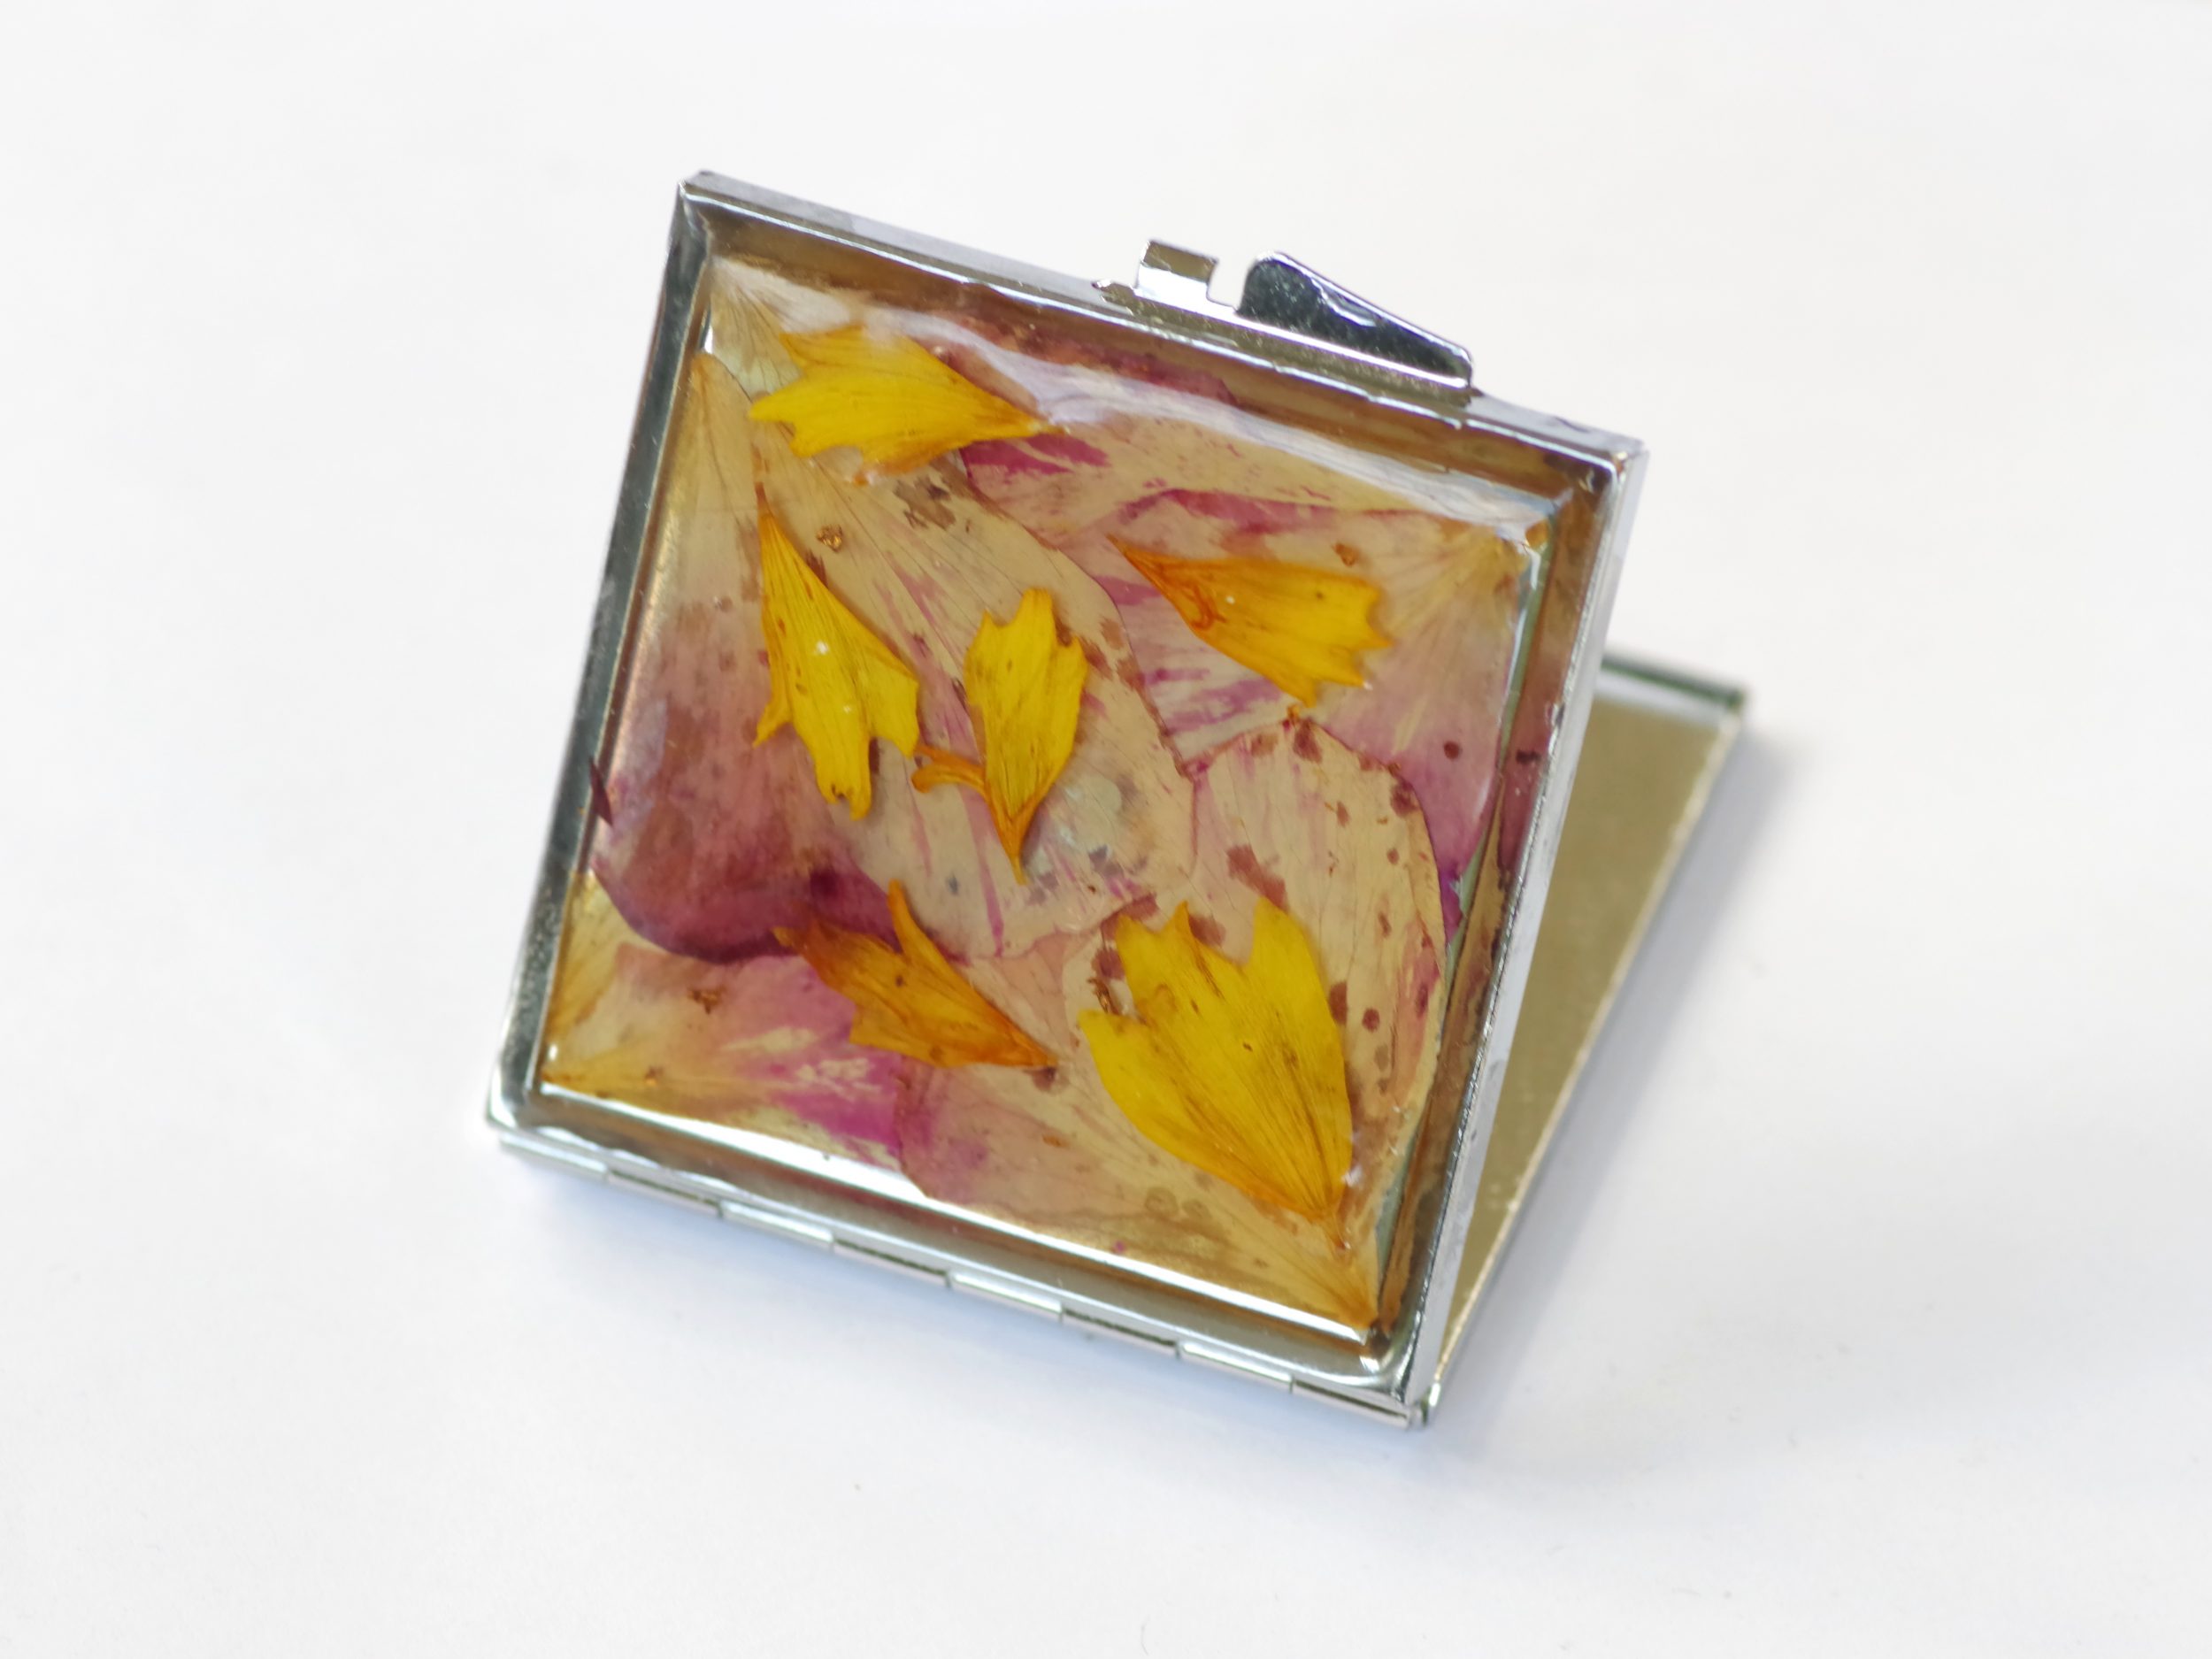 miroir de poche décoré d'un mélimélo de pétales roses et jaunes protégés par de la résine